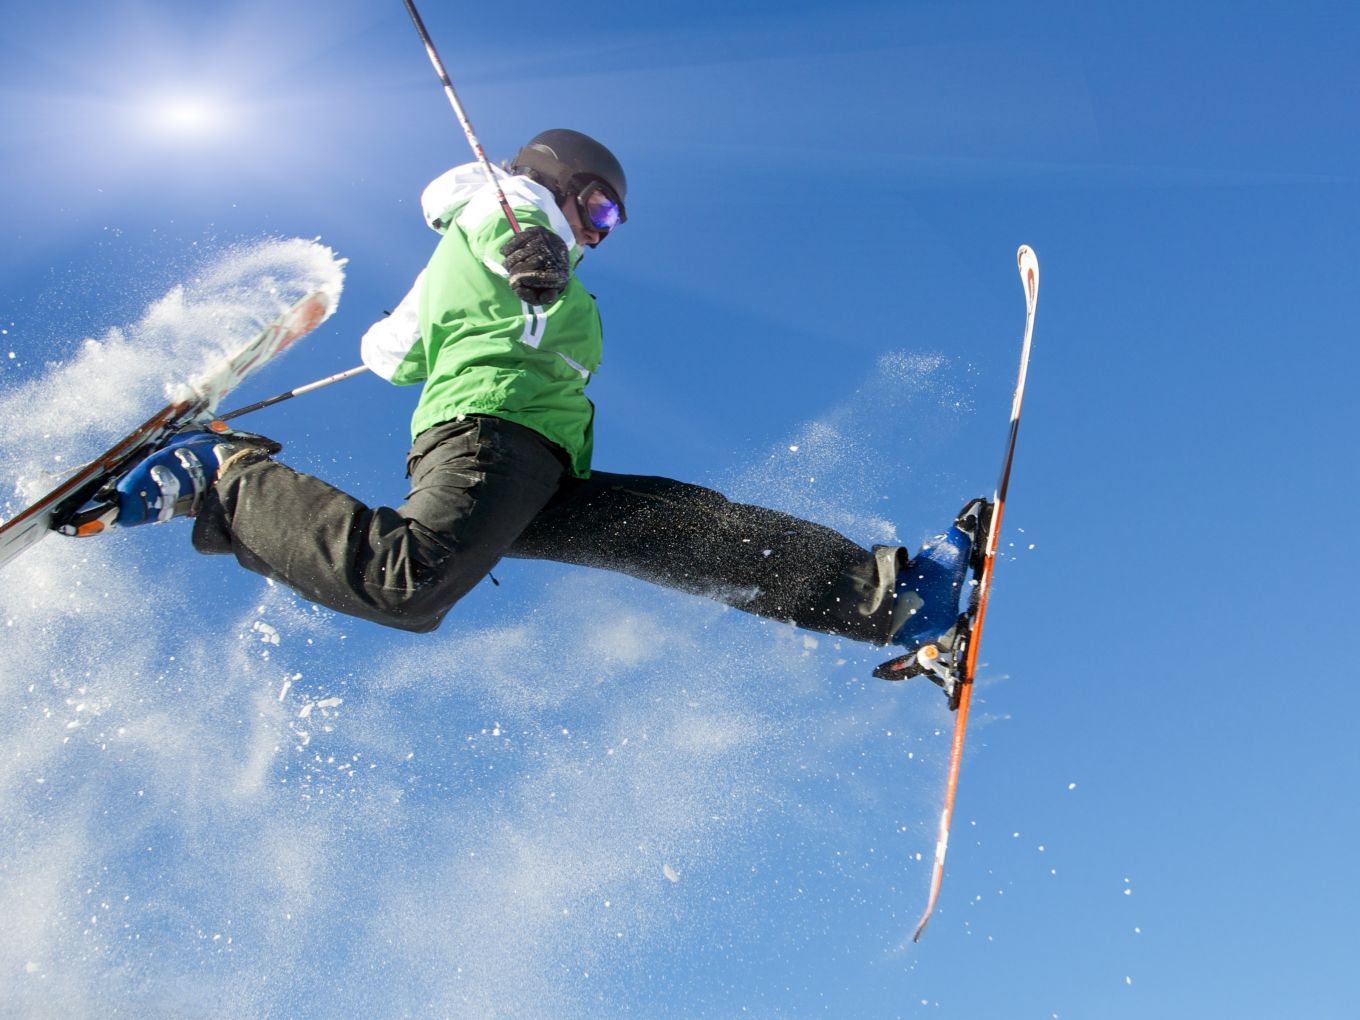 Onderbreking Beschietingen Onmiddellijk Wintersport! Skiën, snowboarden of… wat anders? - Chalet.be